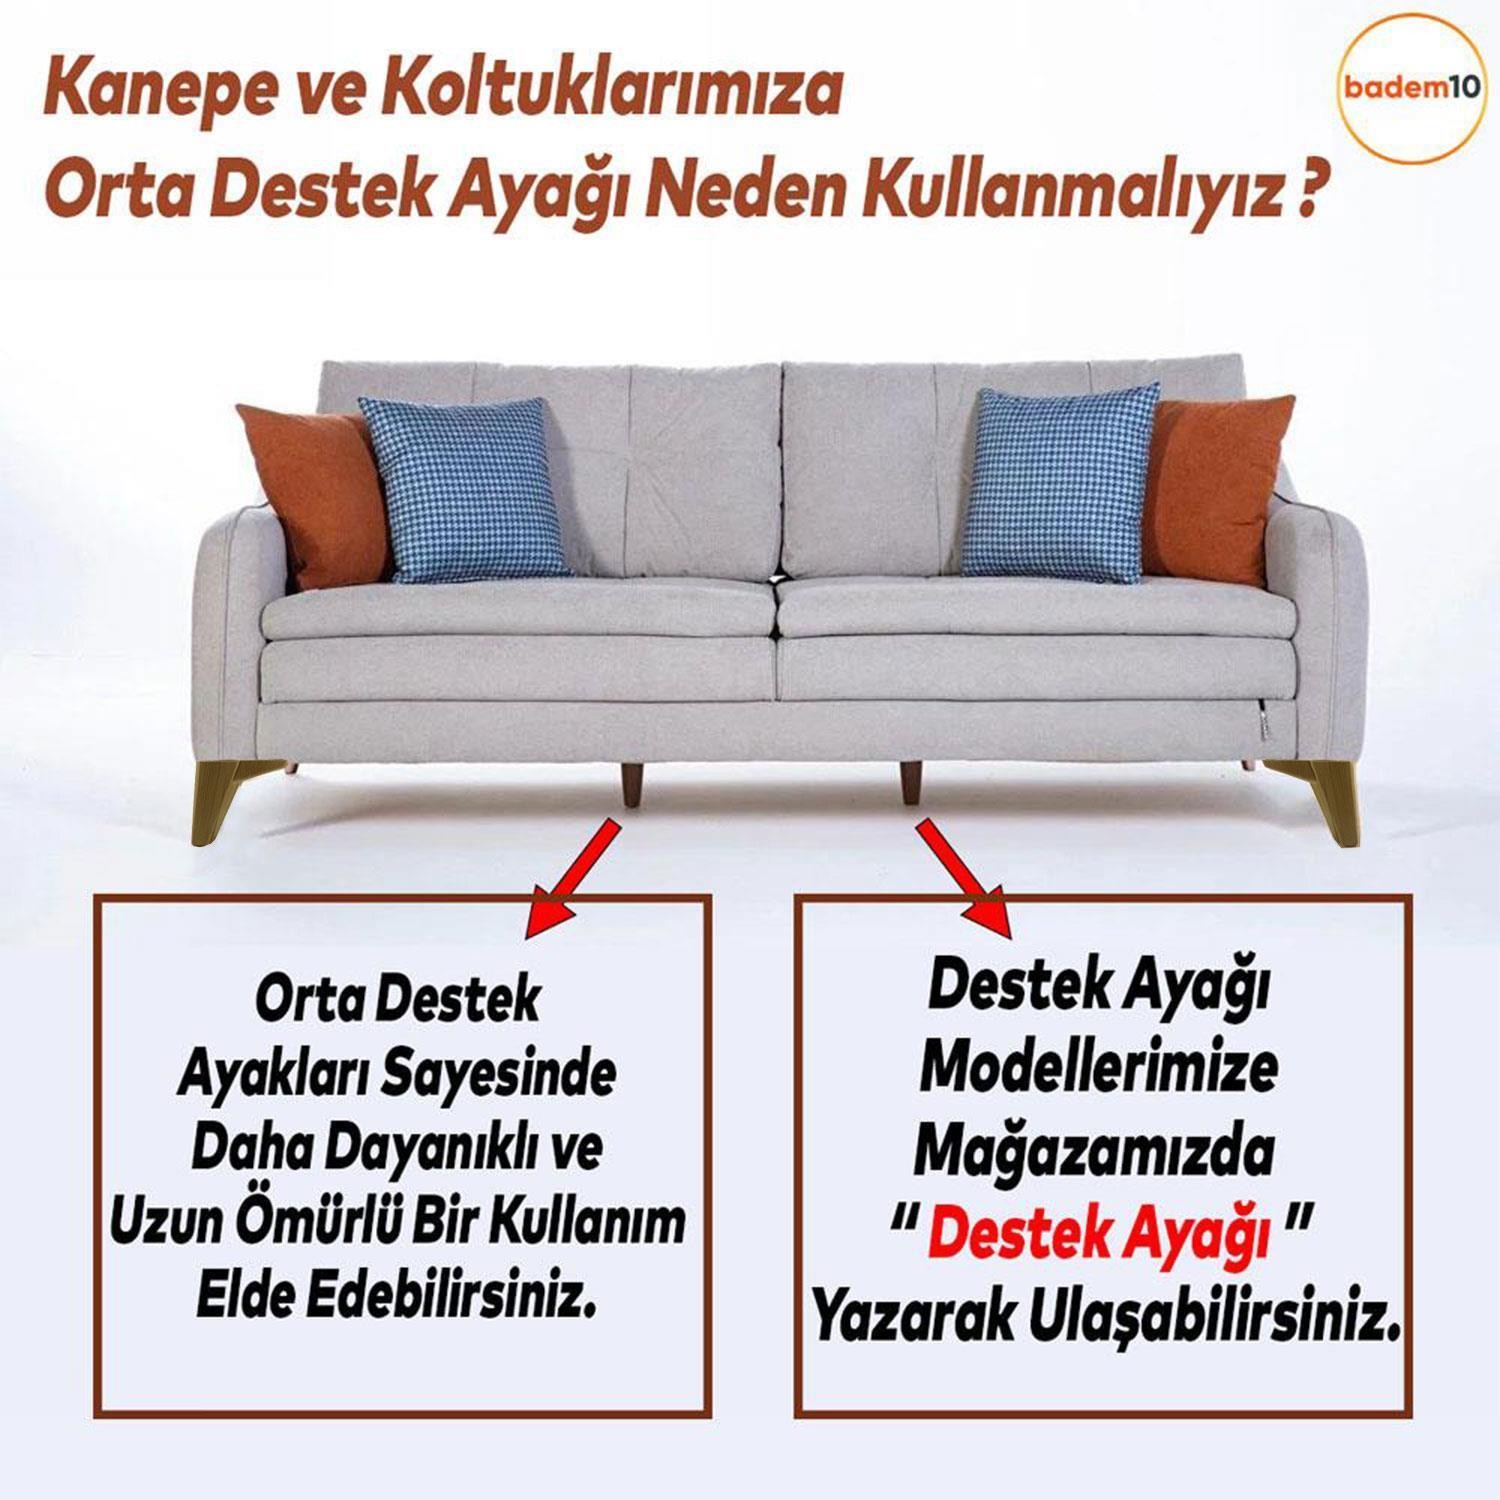 Sedir Lüks Mobilya Kanepe Sehpa Baza TV Ünitesi Koltuk Ayağı Açık Ceviz 12 cm Ayak (4 ADET)